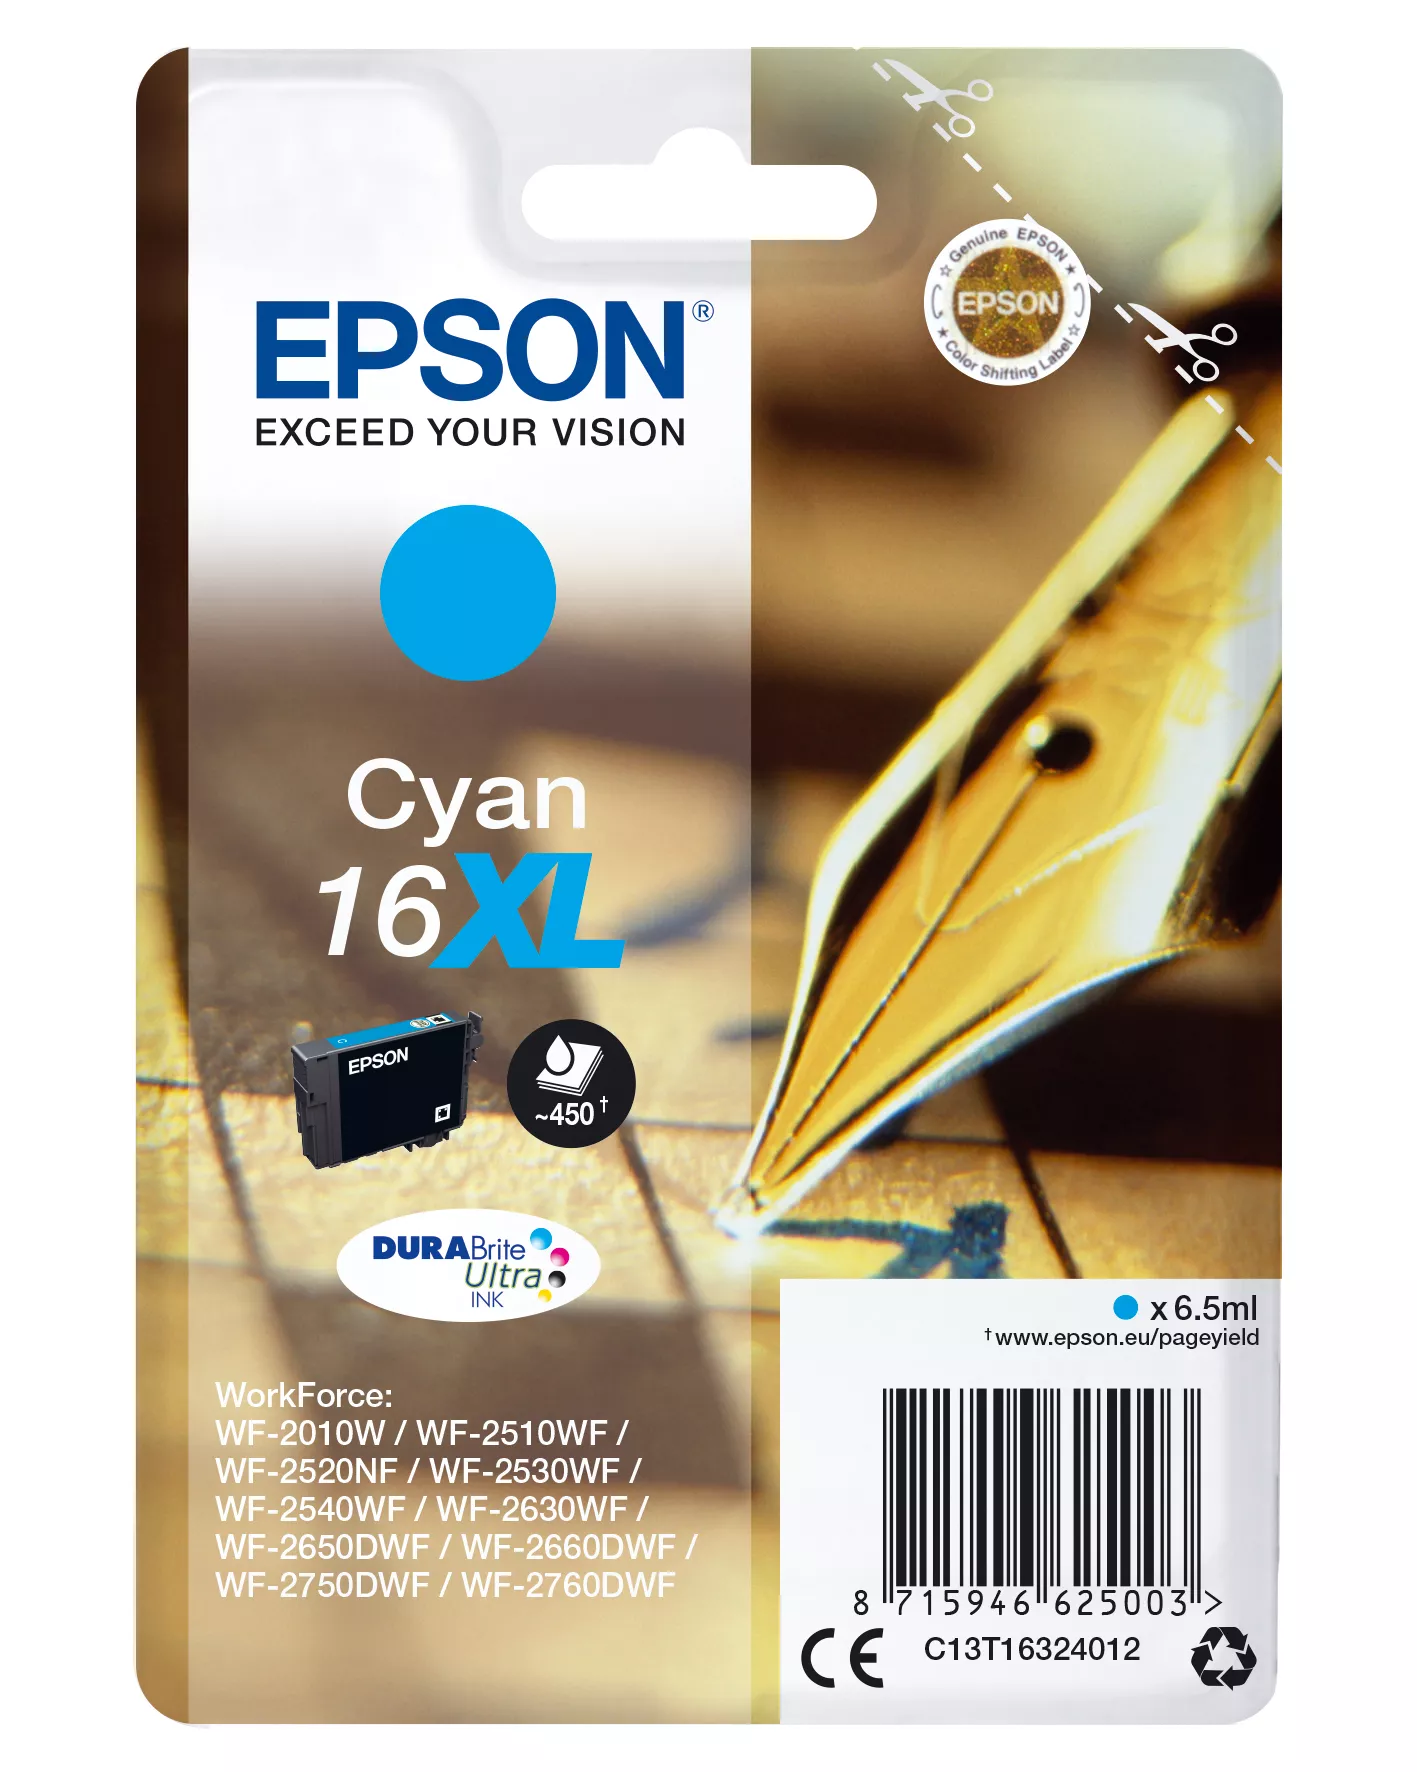 Achat EPSON 16XL cartouche dencre cyan haute capacité 6.5ml 450 sur hello RSE